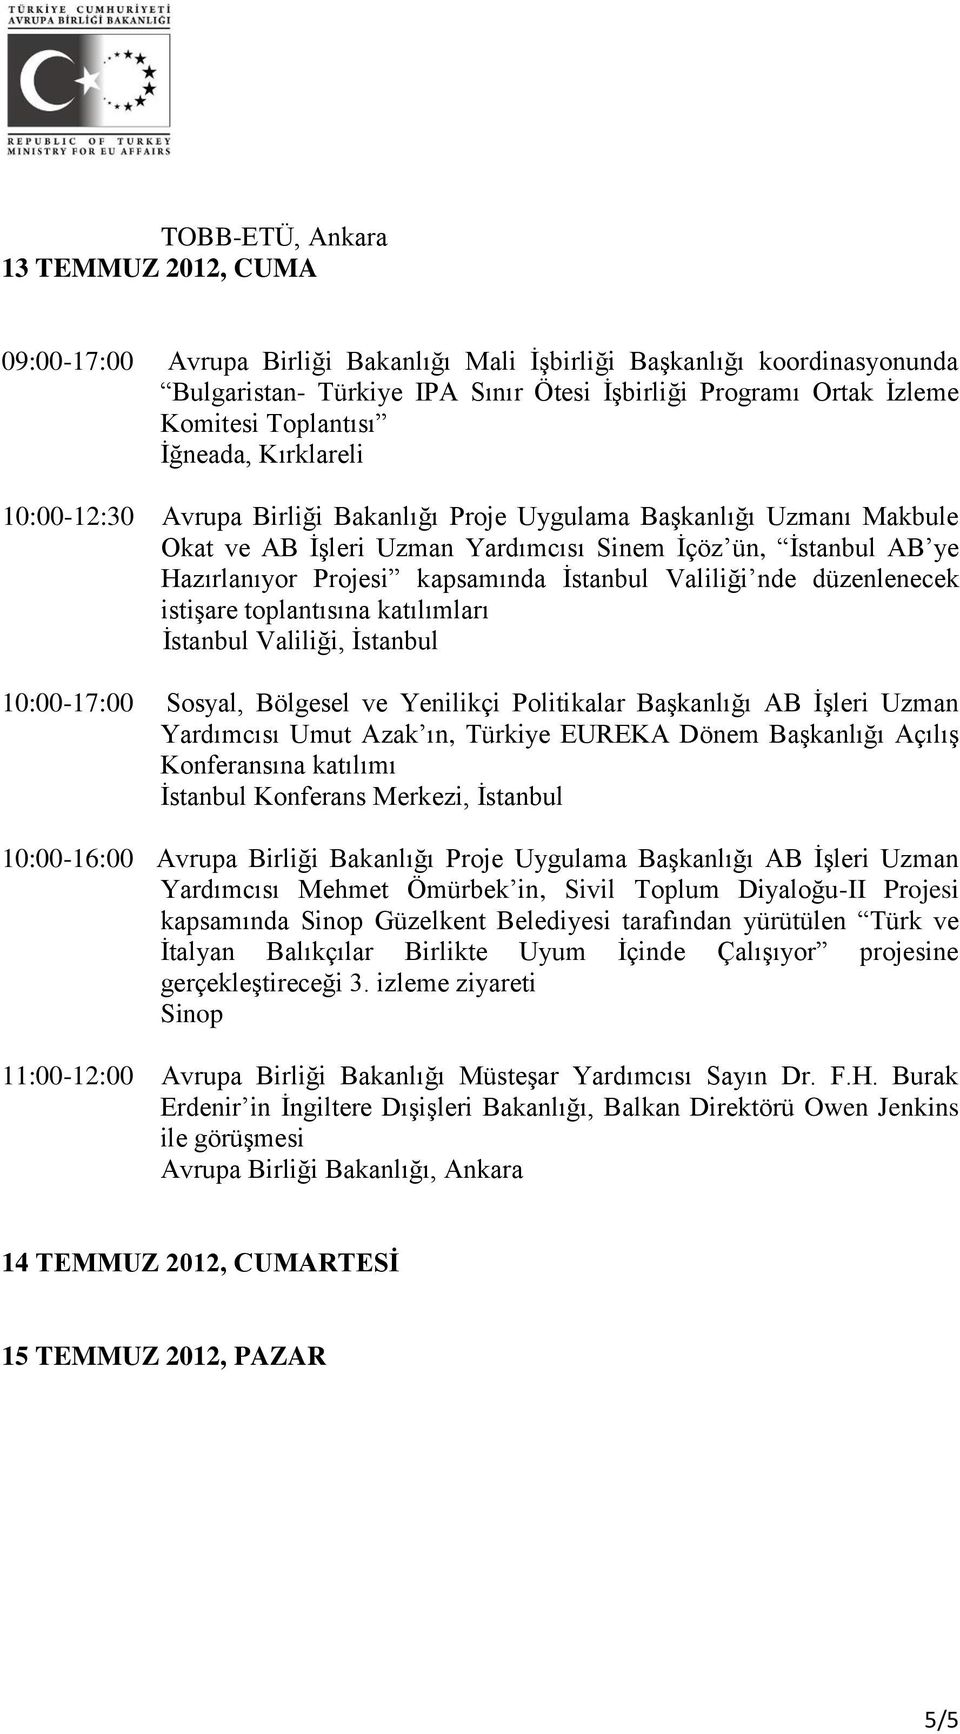 kapsamında İstanbul Valiliği nde düzenlenecek istişare toplantısına katılımları İstanbul Valiliği, İstanbul 10:00-17:00 Sosyal, Bölgesel ve Yenilikçi Politikalar Başkanlığı AB İşleri Uzman Yardımcısı